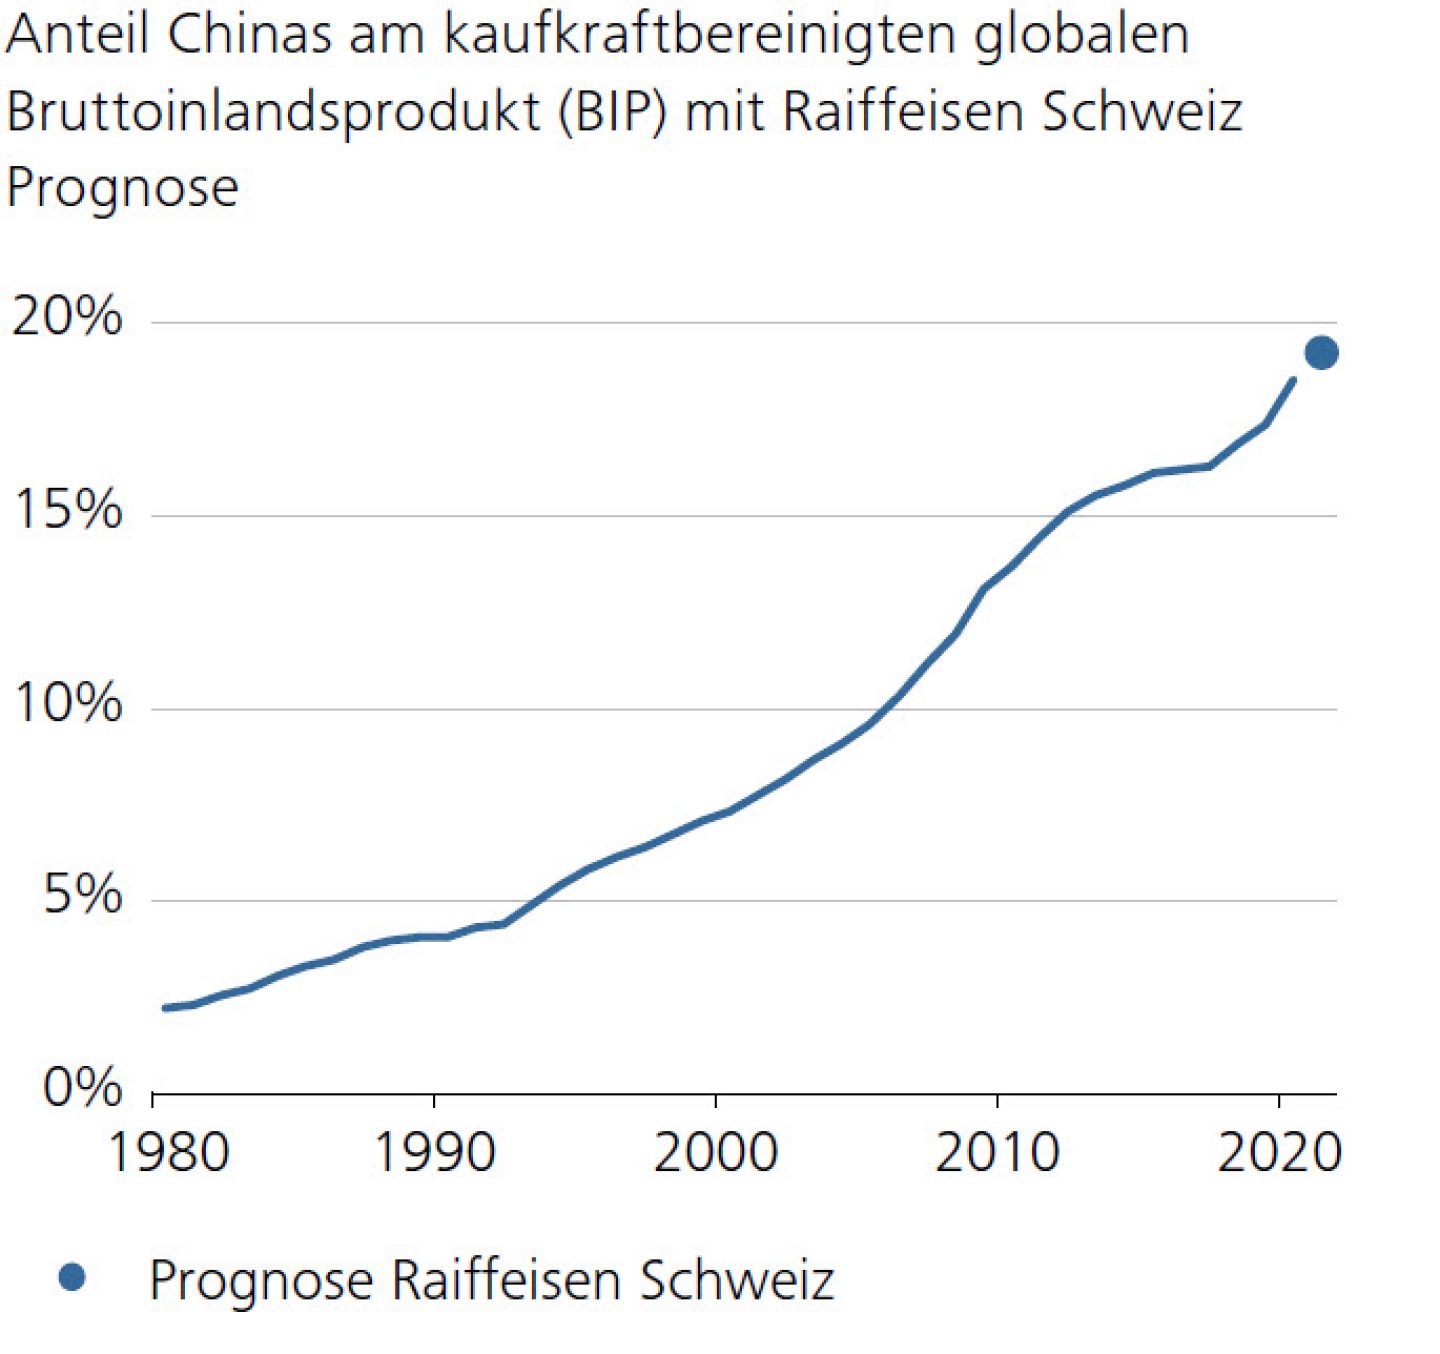 Anteil Chinas am kaufkraftbereinigten globalen Bruttoinlandsprodukt (BIP) mit Raiffeisen Schweiz Prognose